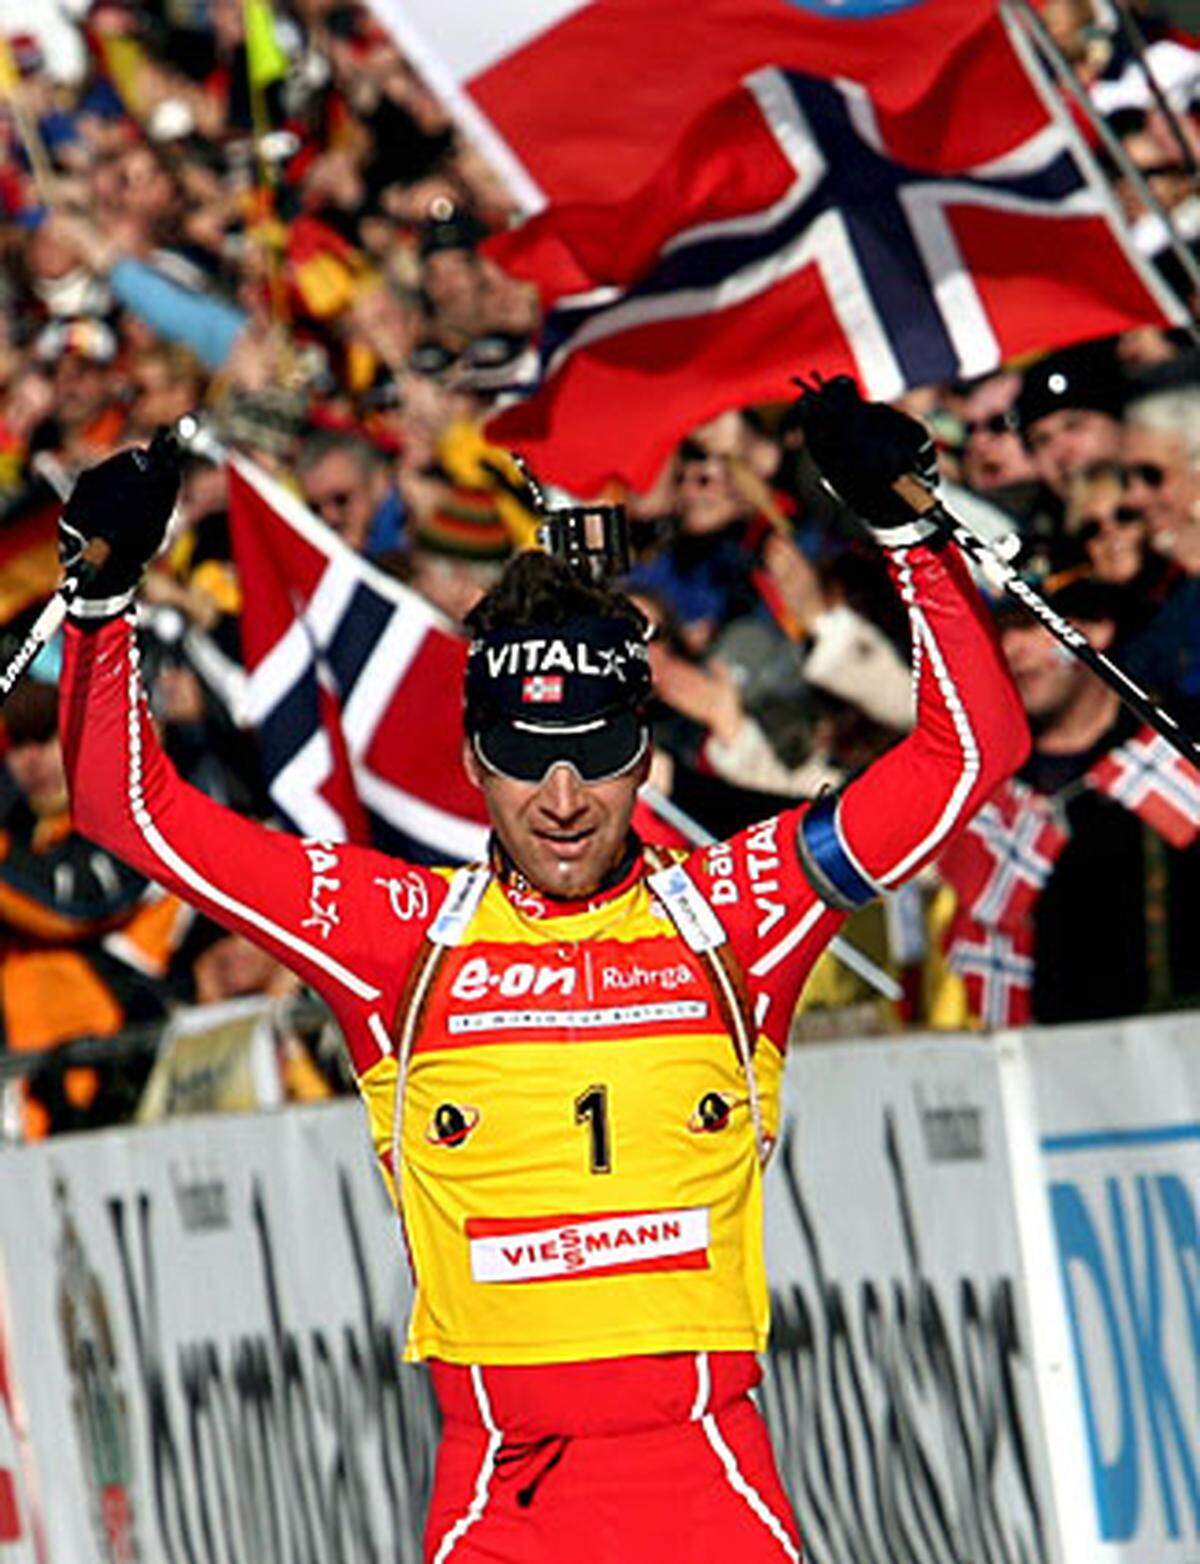 Bei den Olympischen Spielen in Turin 2006 kann Björndalen seine vier Goldenen von 2002 nicht verteidigen und muss sich mit zwei Silbernen und einer Bronzemedaille begnügen. Doch bei der WM 2007 ist sein Goldhunger wieder da: In Antholz gewinnt er Gold in Sprint und Verfolgung, dazu gibt es Silber mit der Staffel.